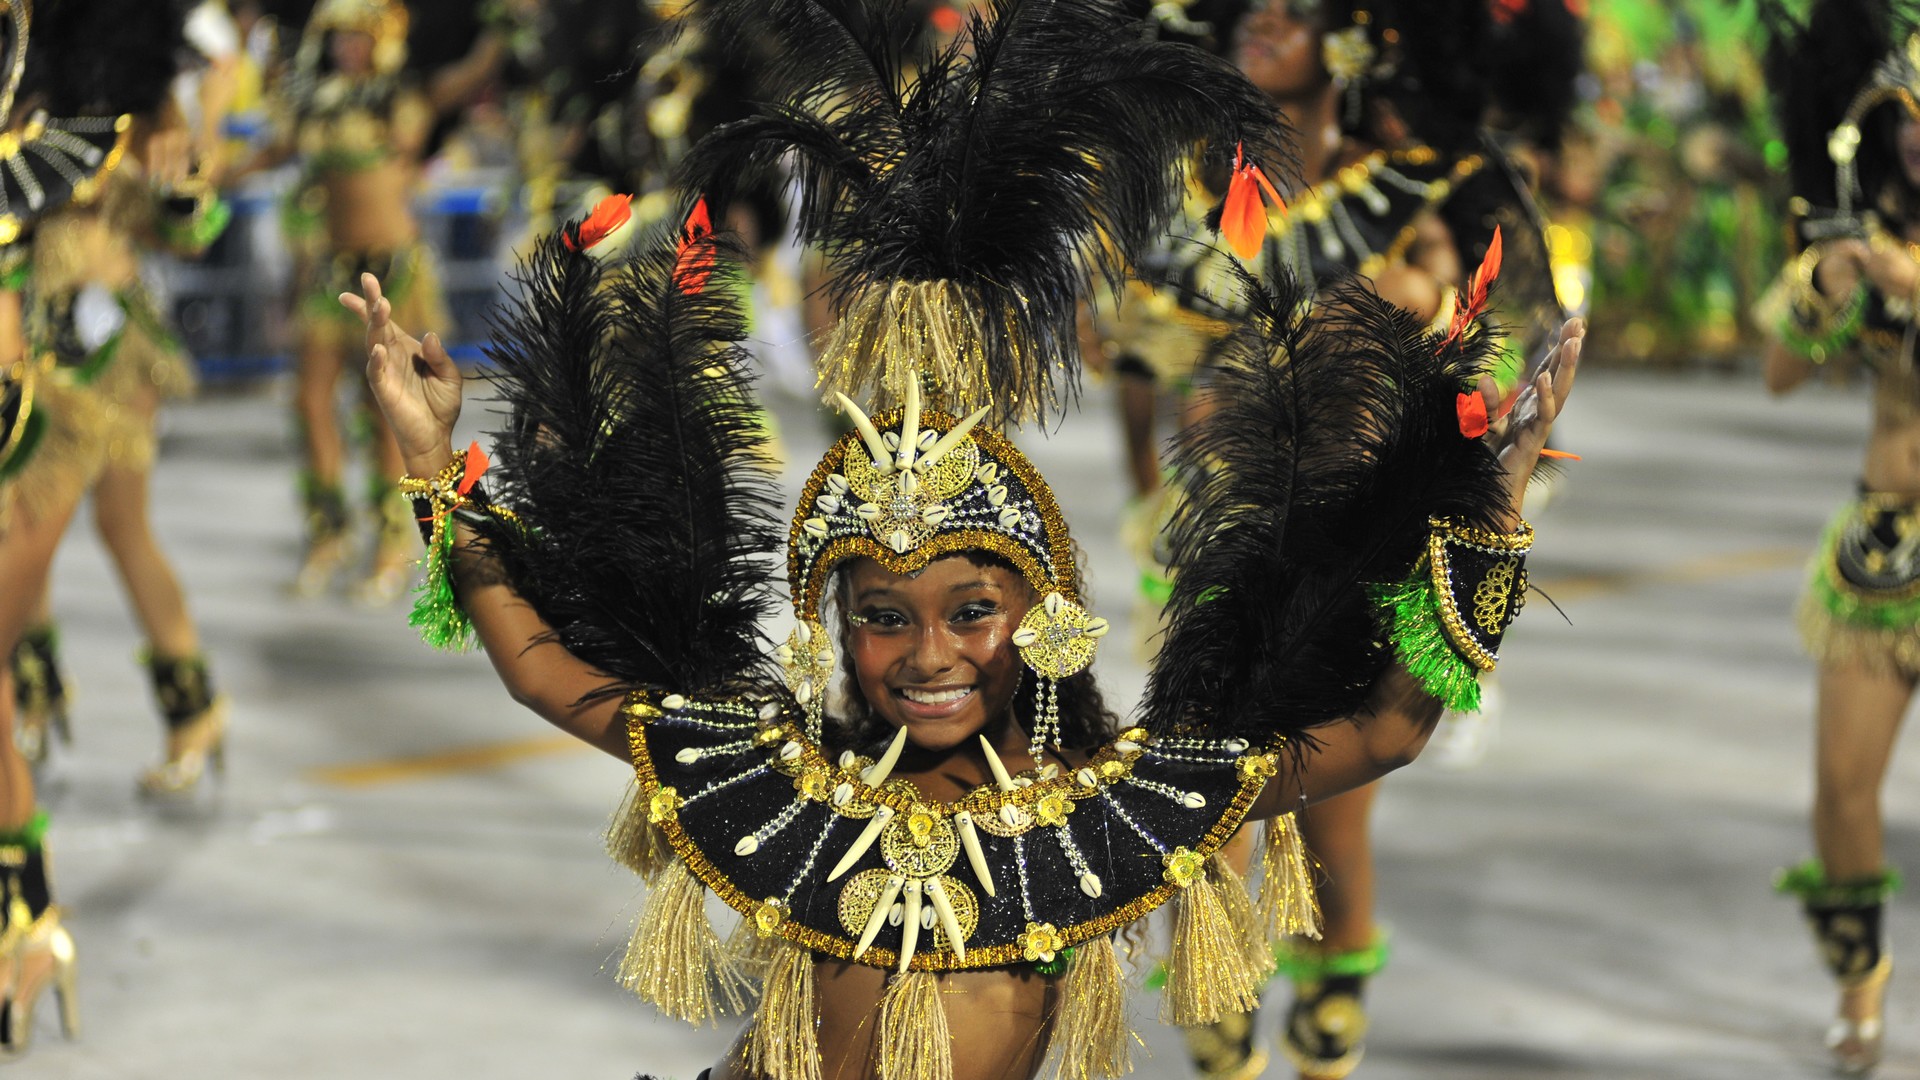 Le carnaval de Rio (photo Flickr Fora do Eixo CC BY-SA 2.0)